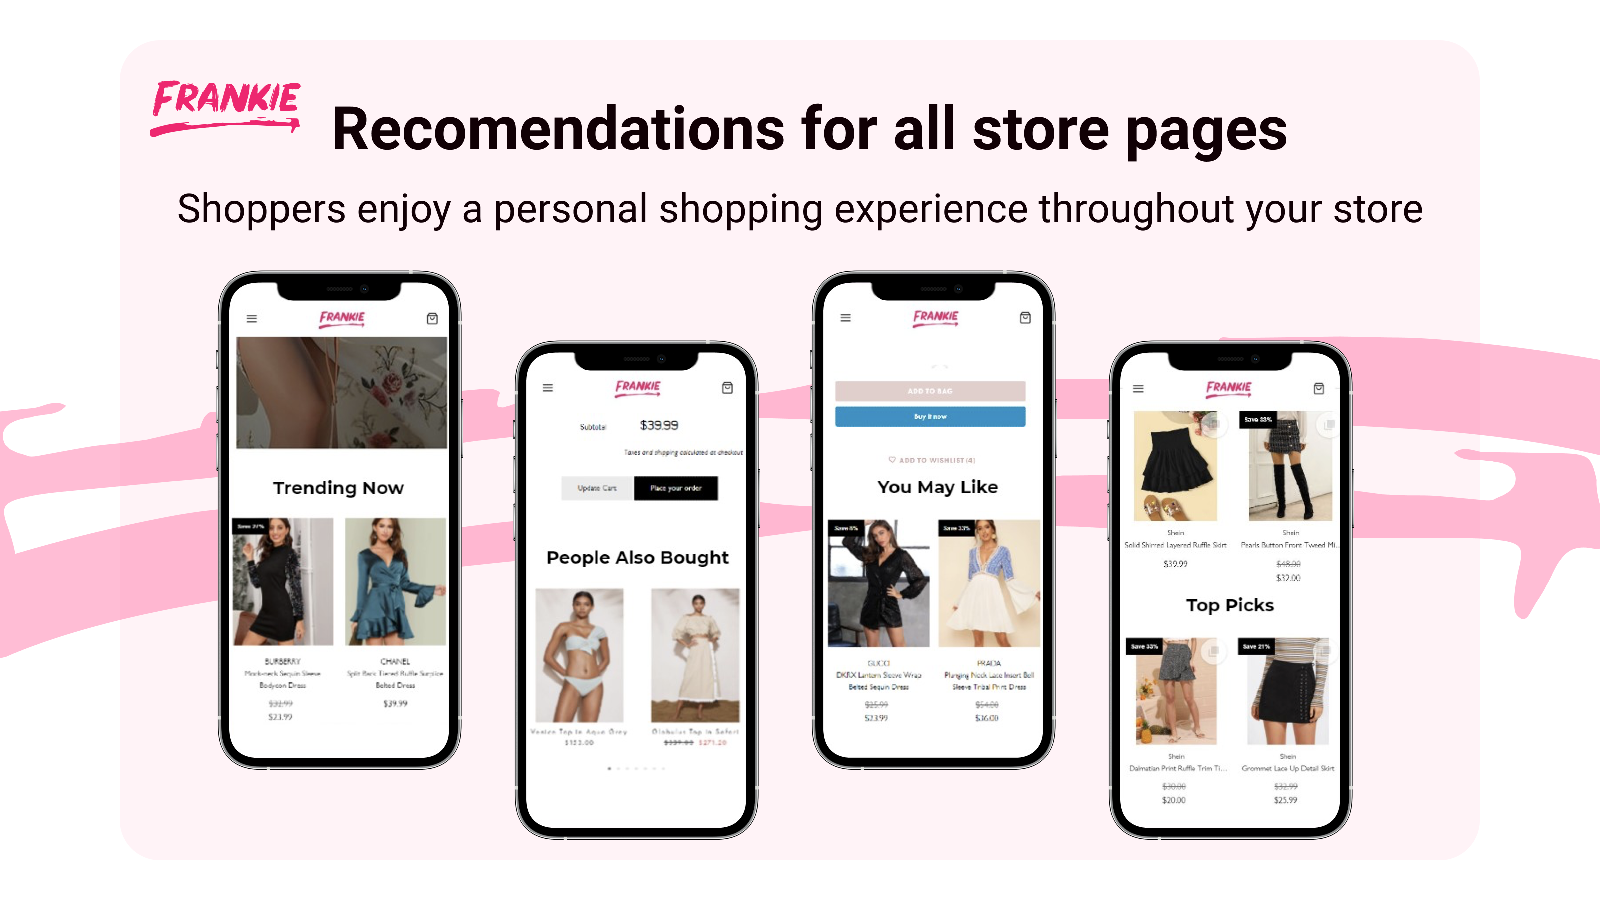 Amazon ähnliche personalisierte Empfehlungen auf jeder Shop-Seite